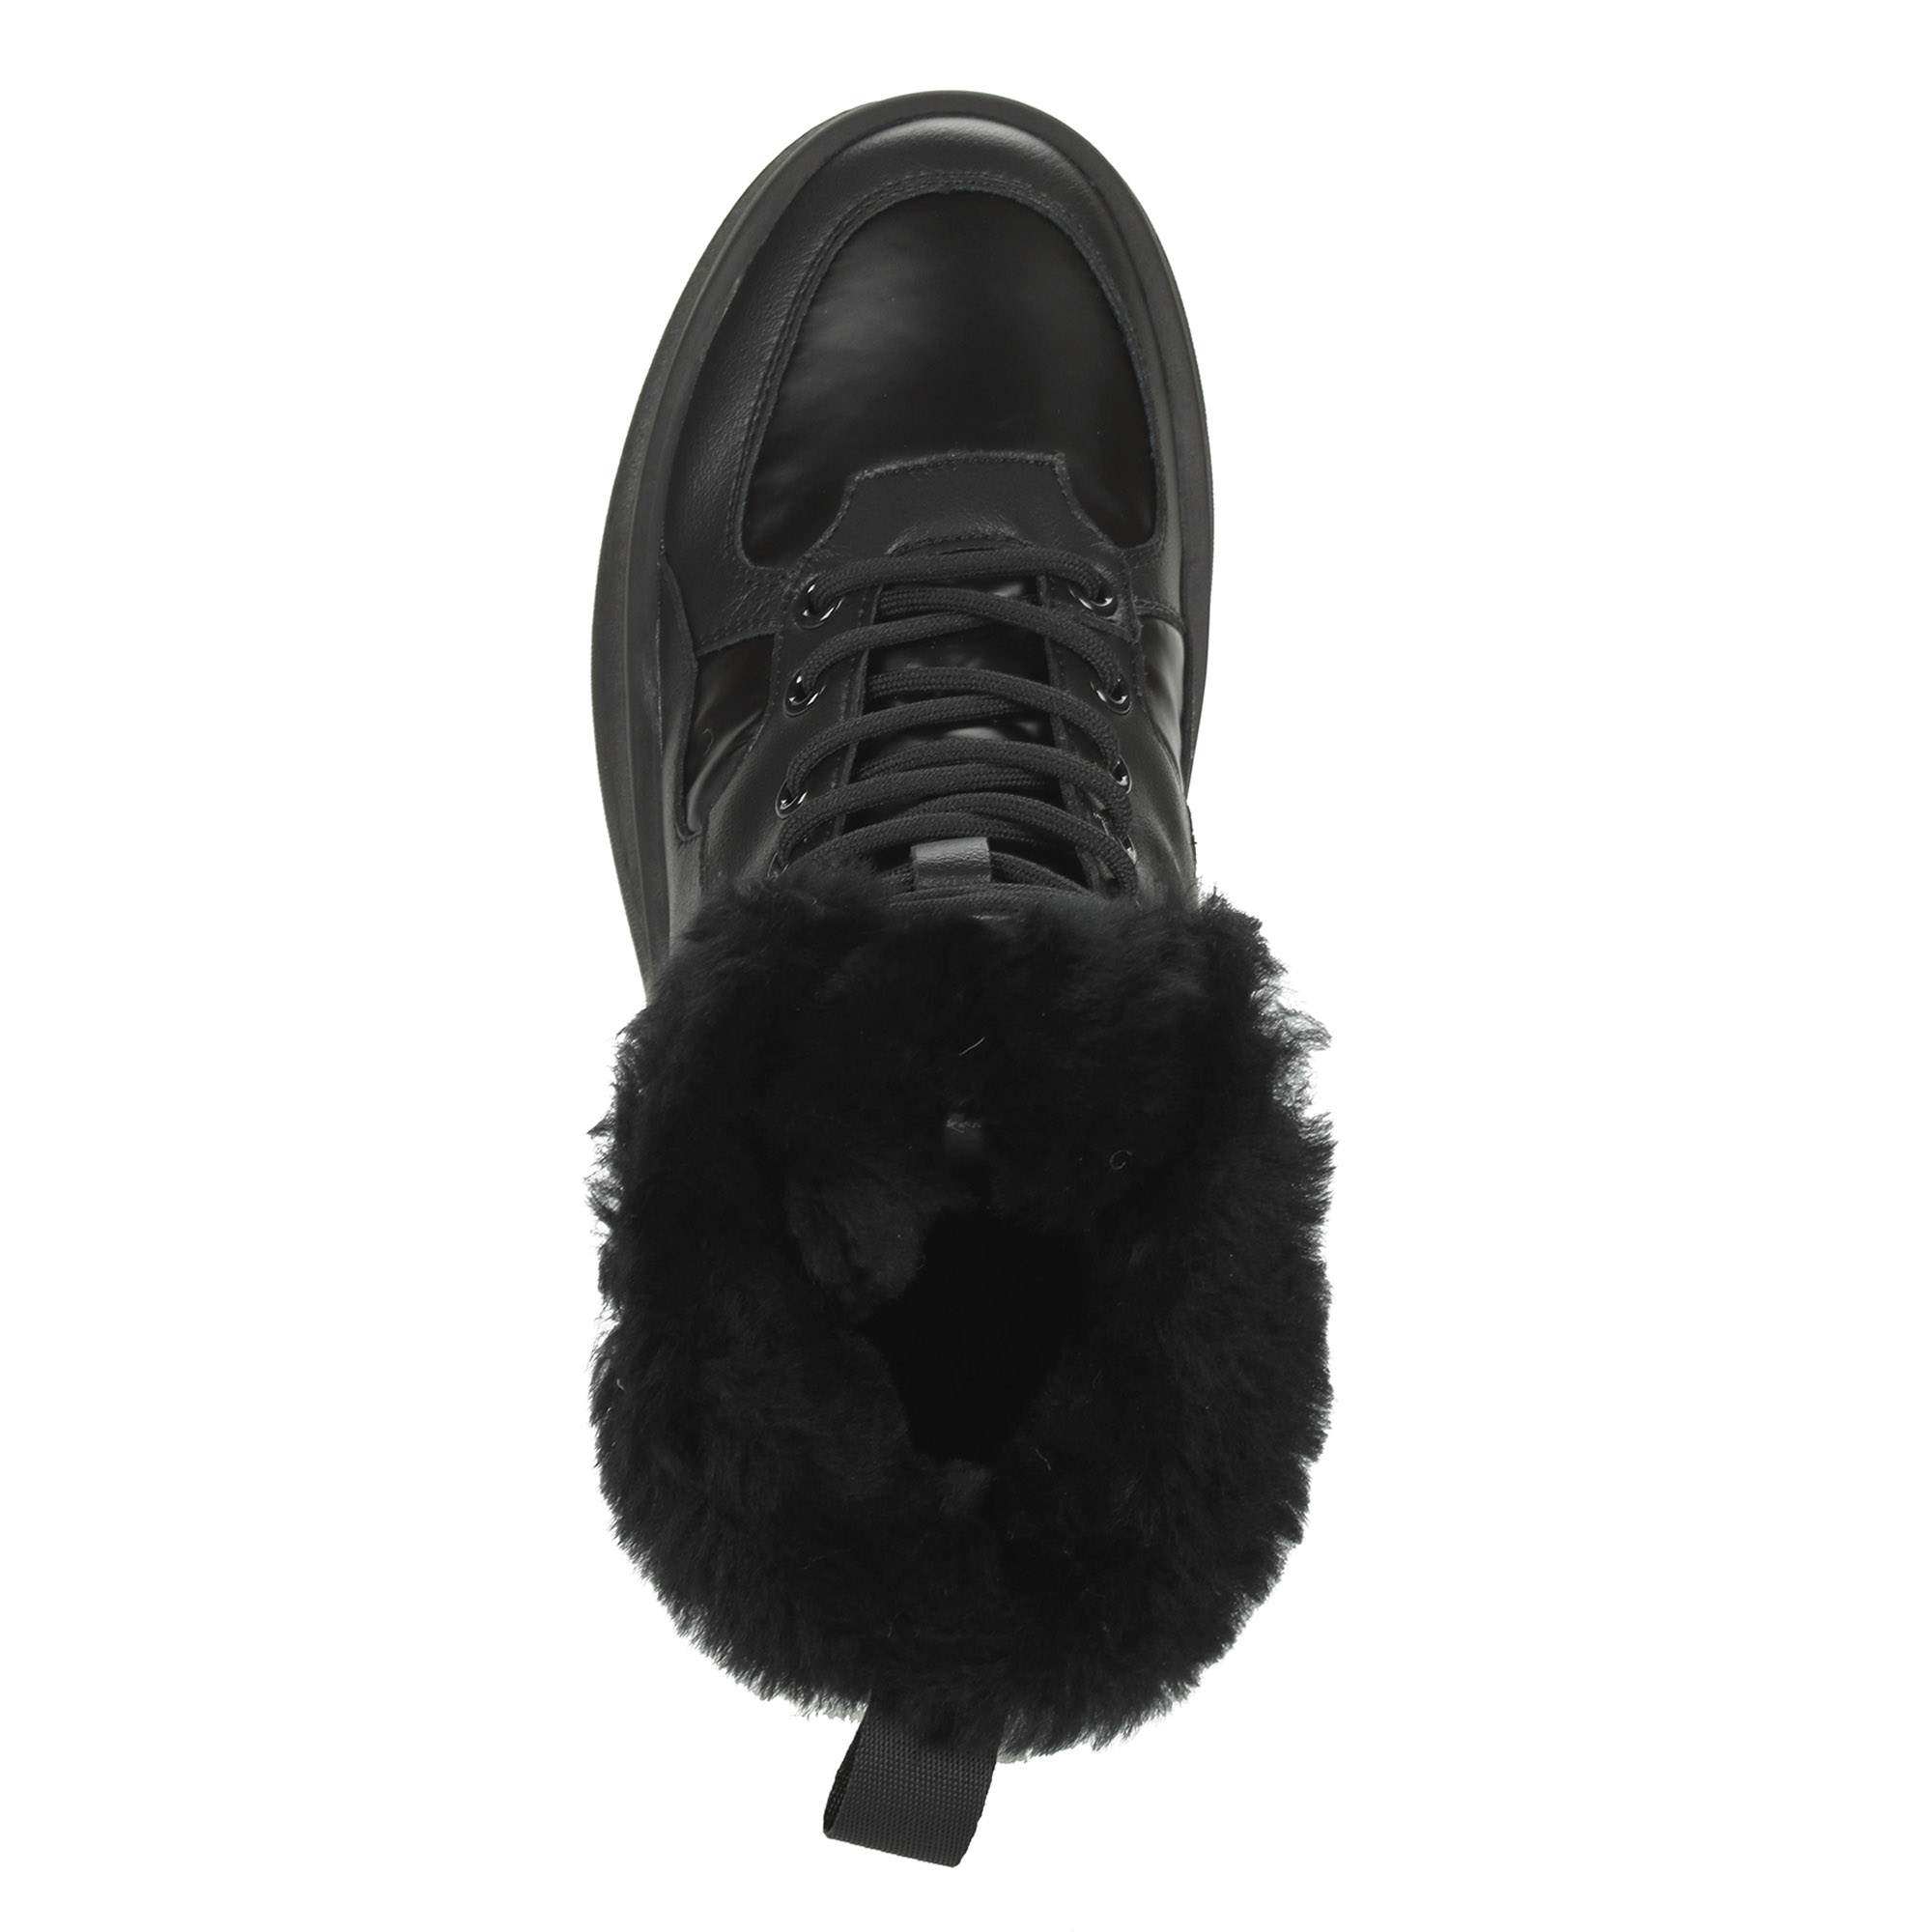 Черные высокие кроссовки из комбинированных материалов смеховой опушкой на подкладке из натуральной шерсти на утолщенной платформе Respect, размер 40, цвет черный - фото 7